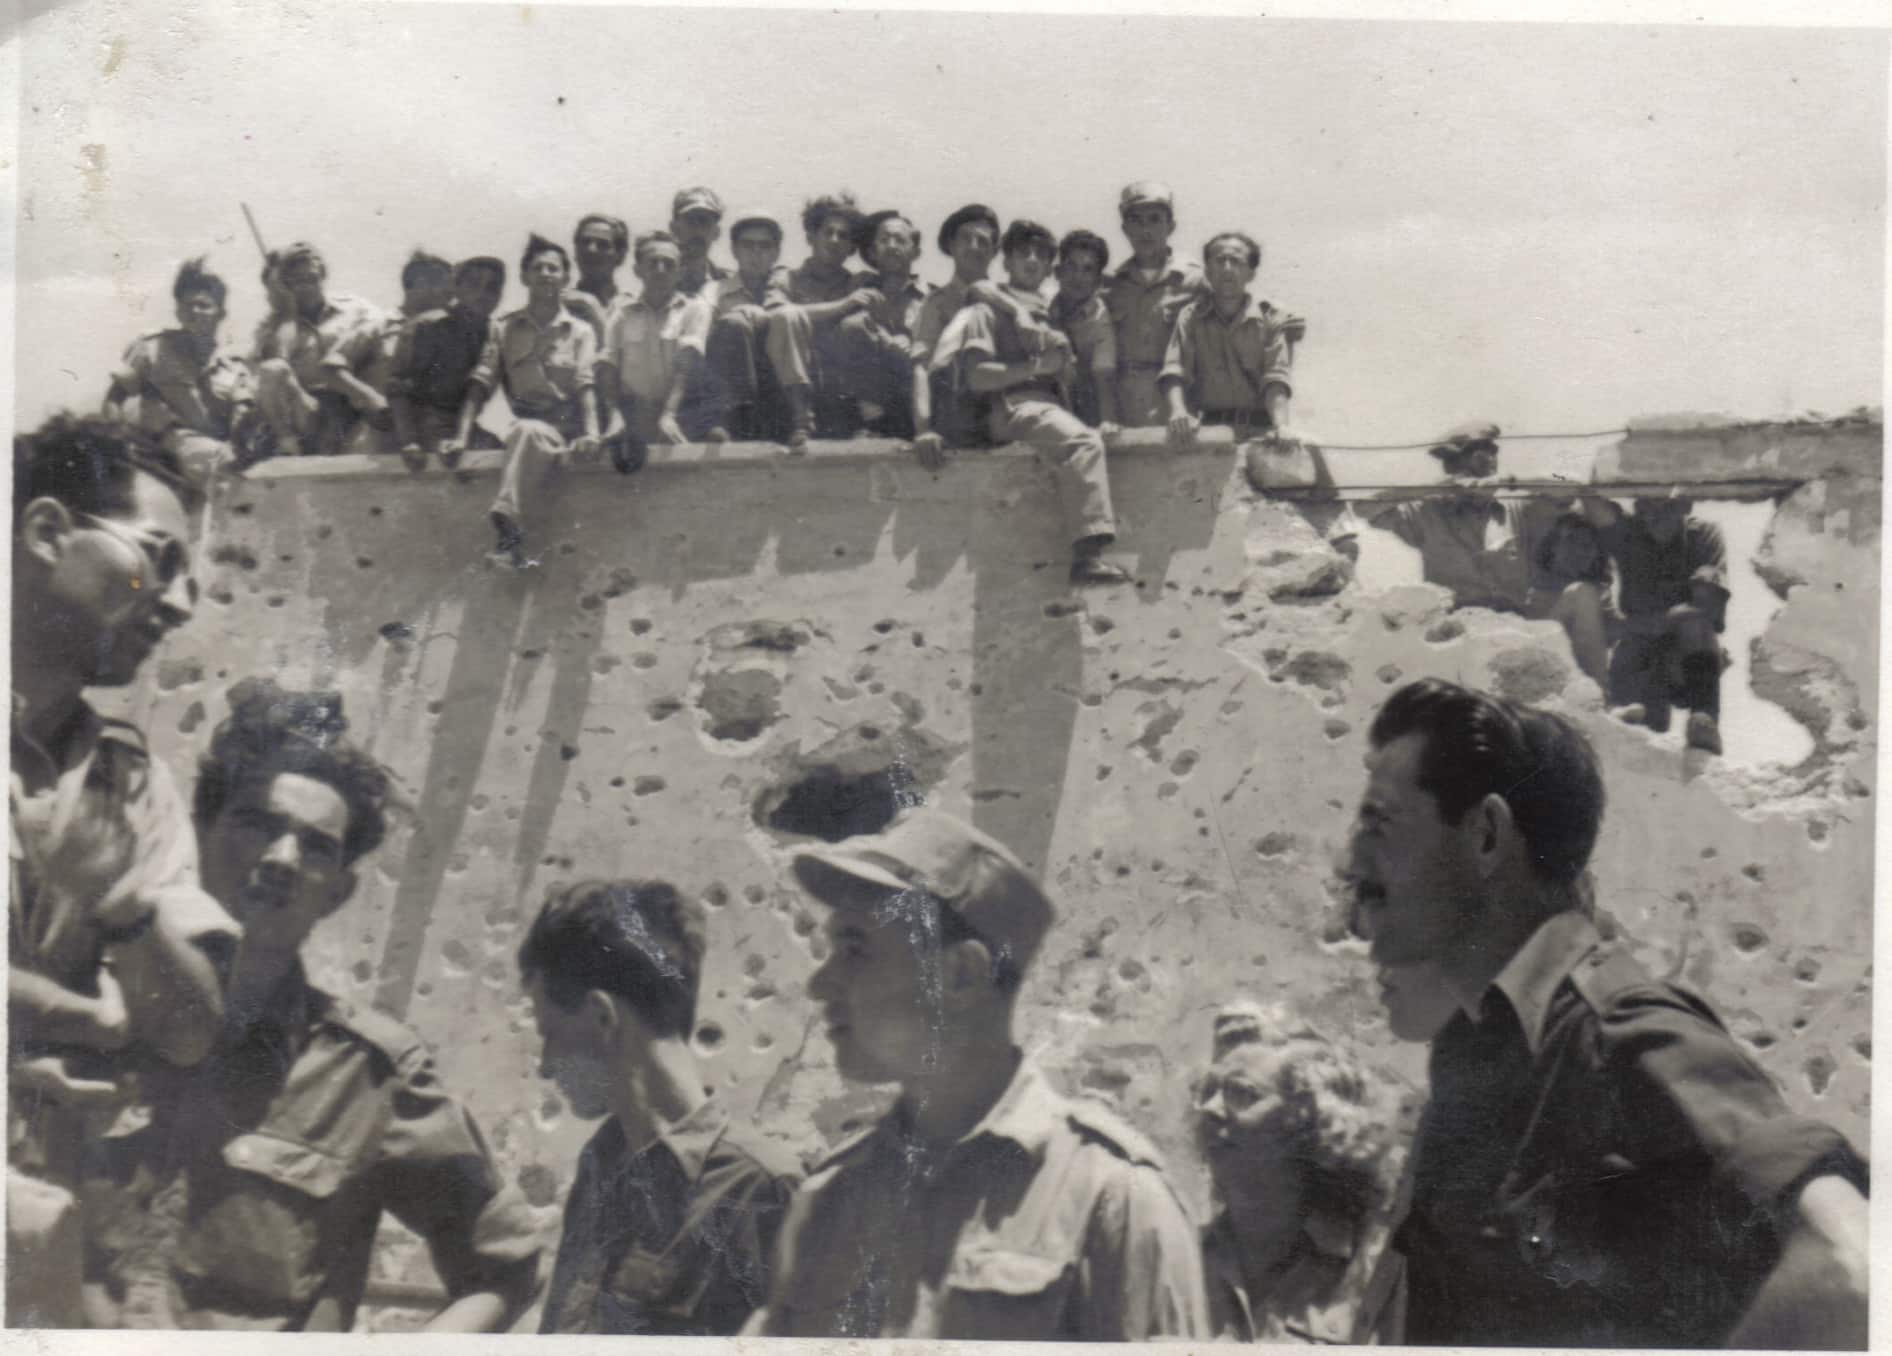 קיבוץ רמת רחל, לאחר מלחמת העצמאות. צולם ב-5 במאי 1949. ברקע חיילים ומפקדים מגדוד 19, הגדוד הממוכן של חטיבת גולני